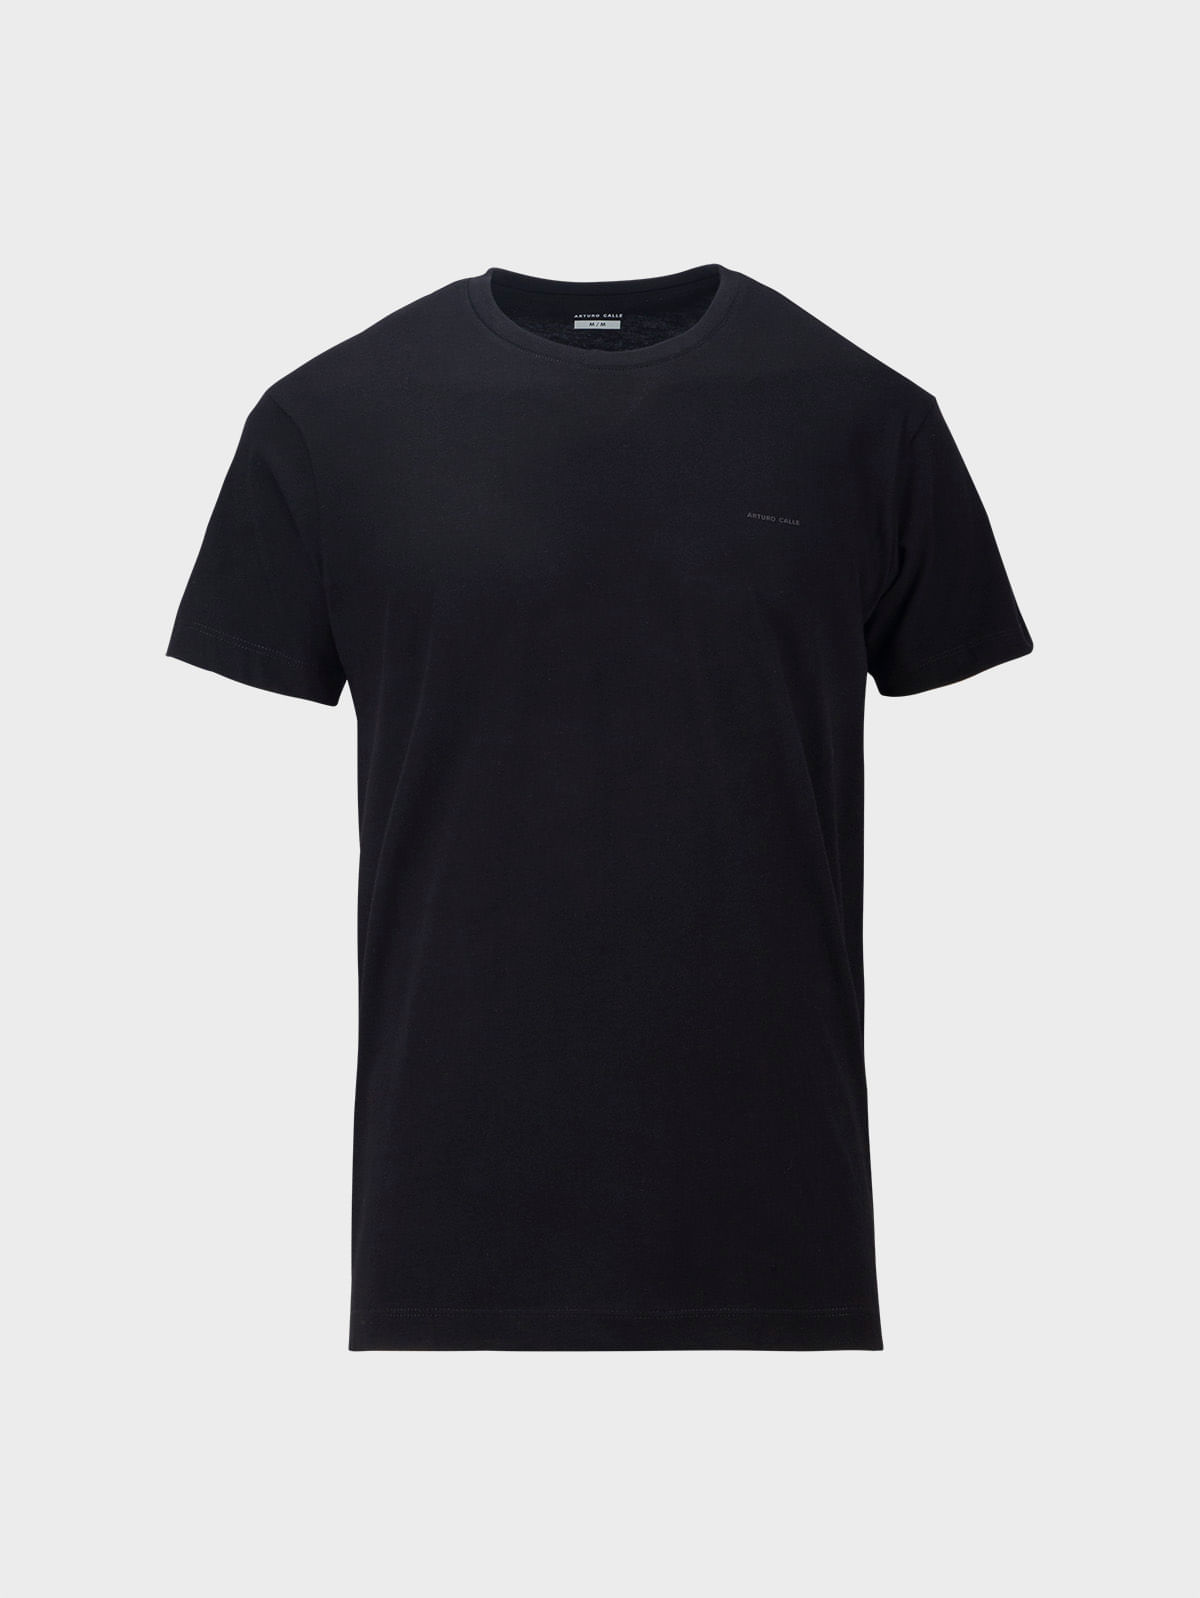 INC - Camiseta básica para hombre, color negro, talla L, Negro 